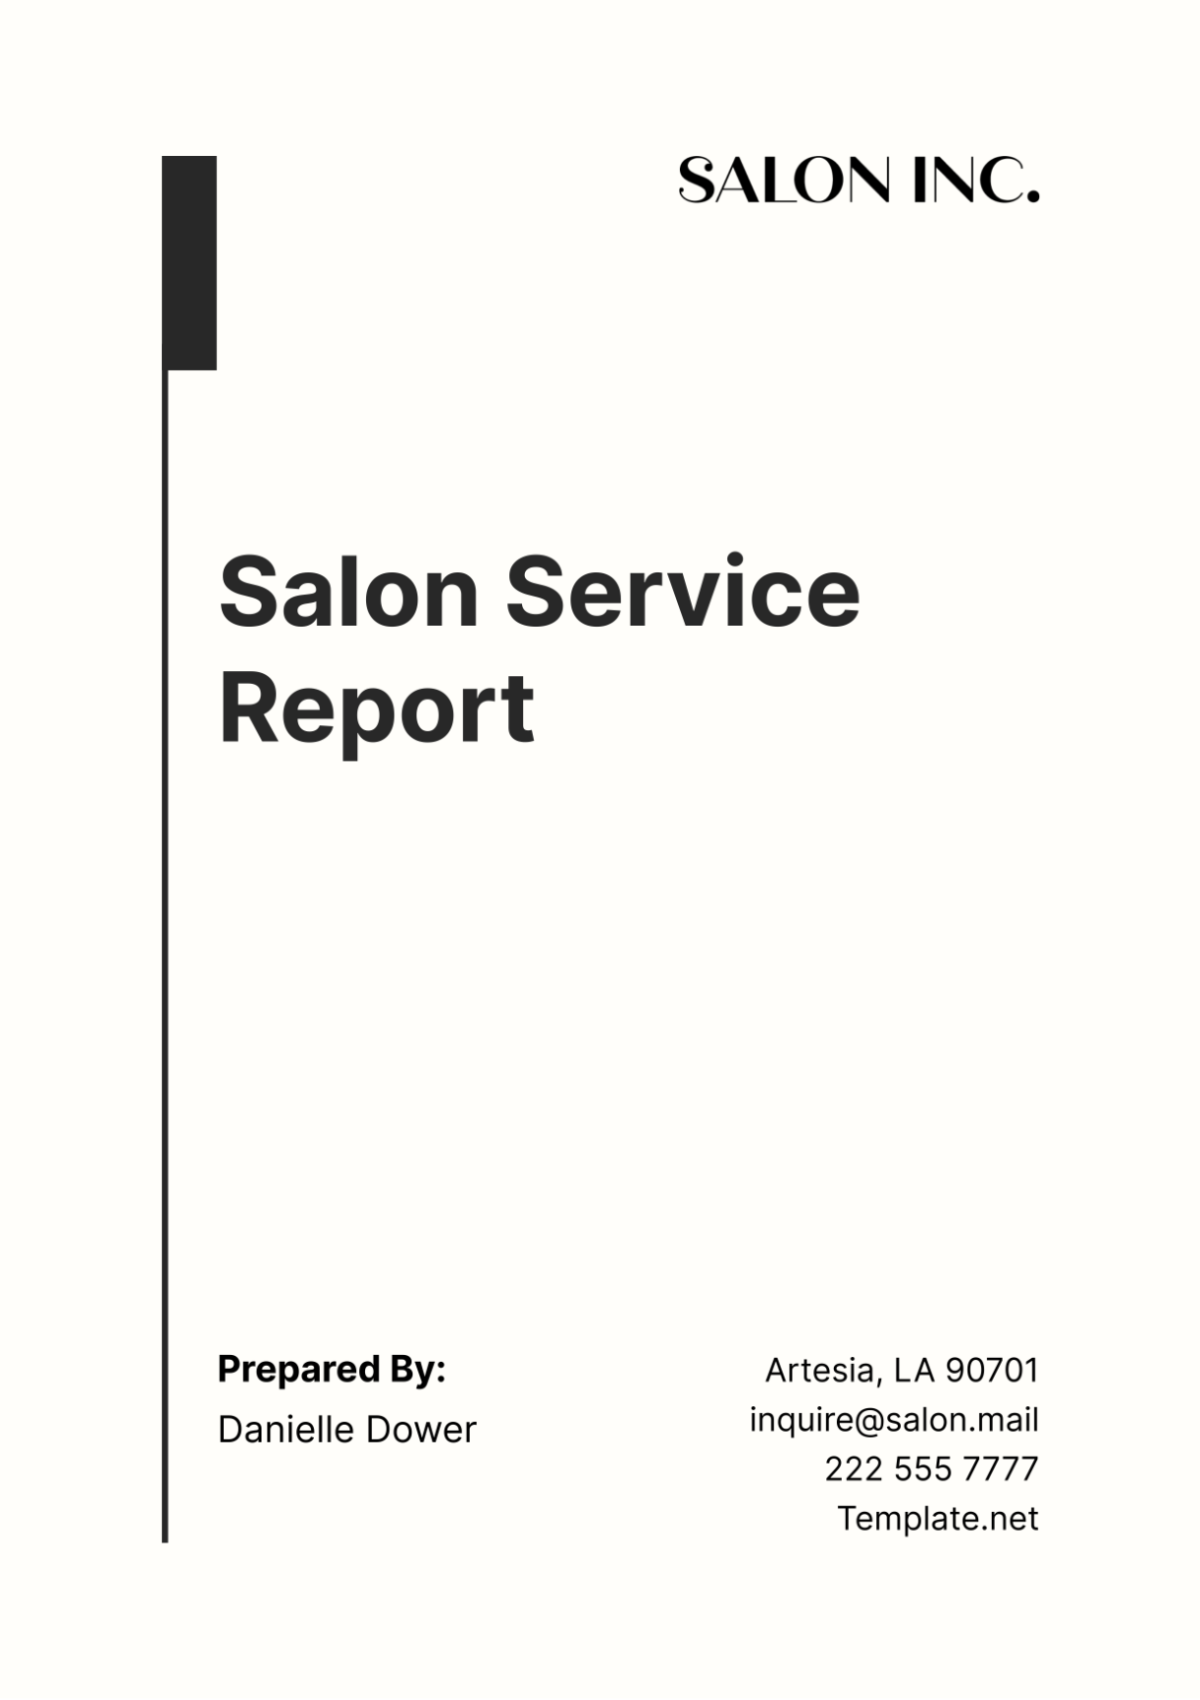 Salon Service Report Template